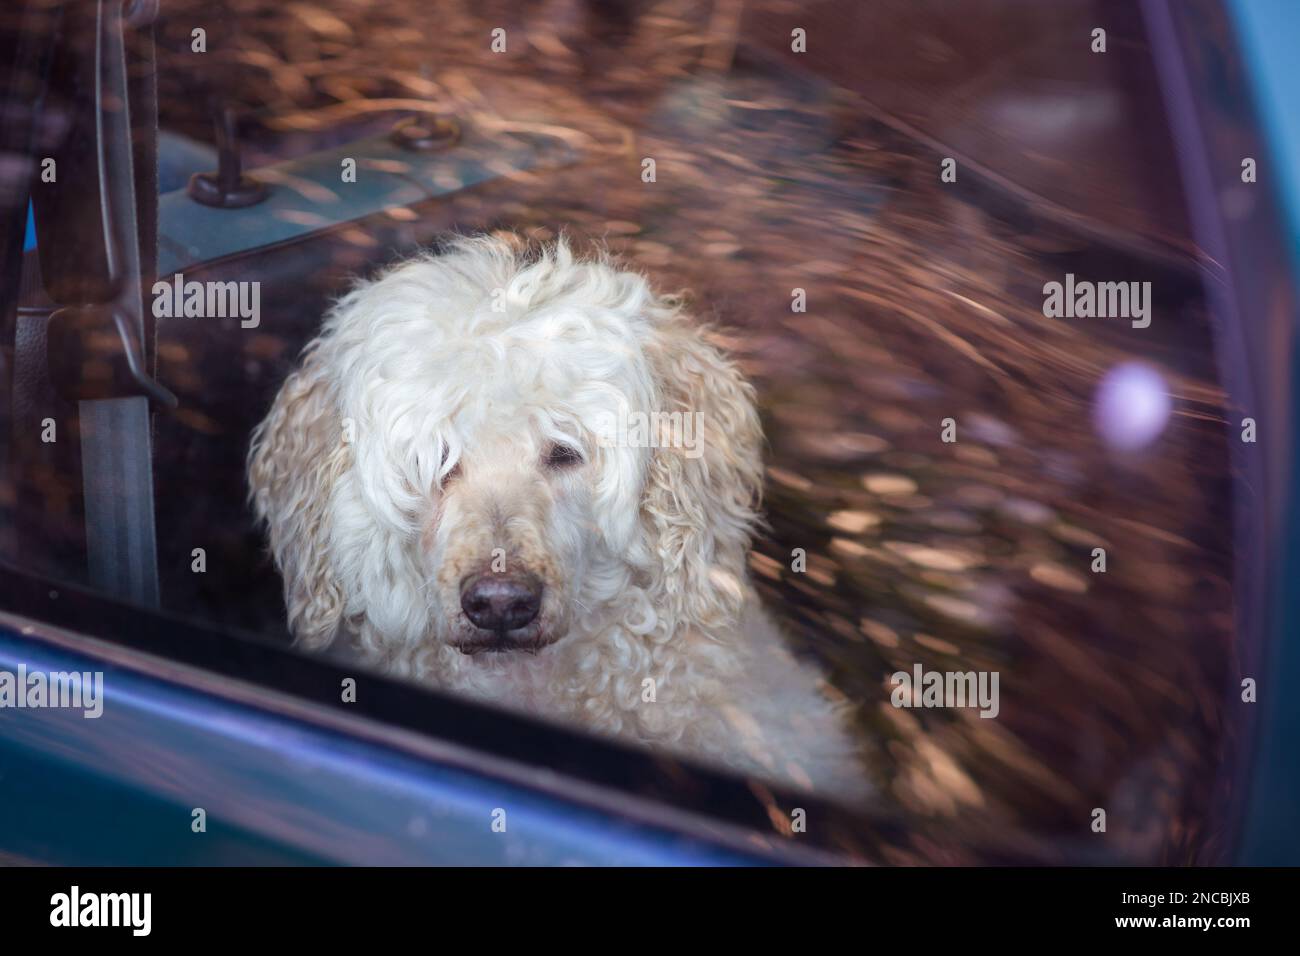 Hund hinter dem Glas im Auto. White Shaggy Big Dog - der königliche Pudel schaut aus dem Fenster in die Kamera. Transport eines Tieres im Auto. Stockfoto